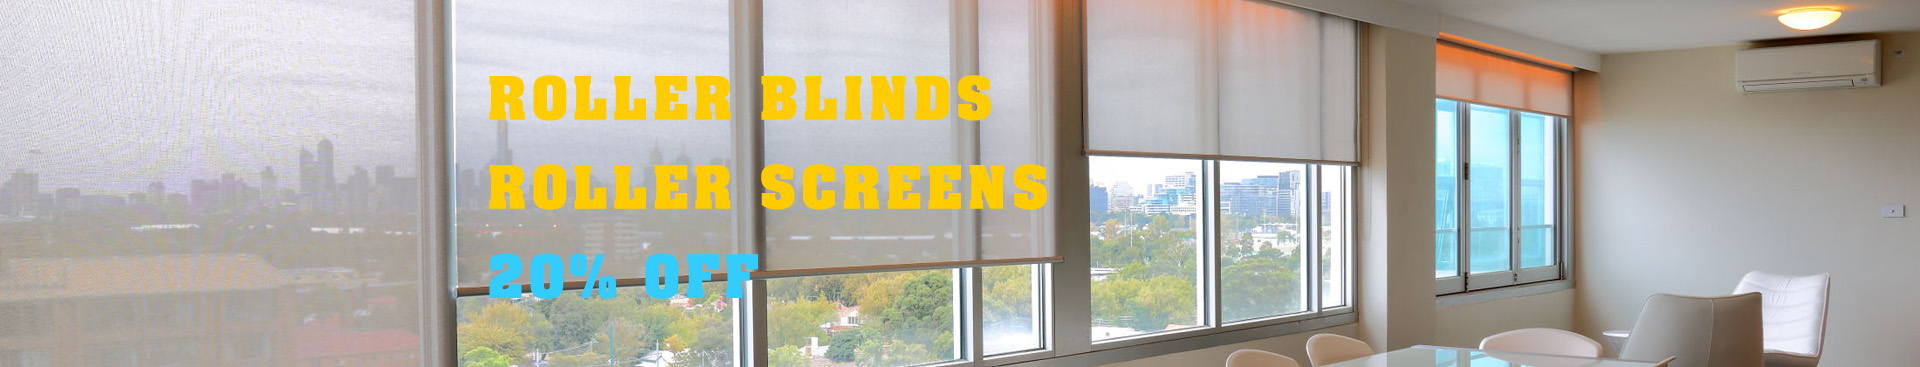 roller blinds Melbourne banner new